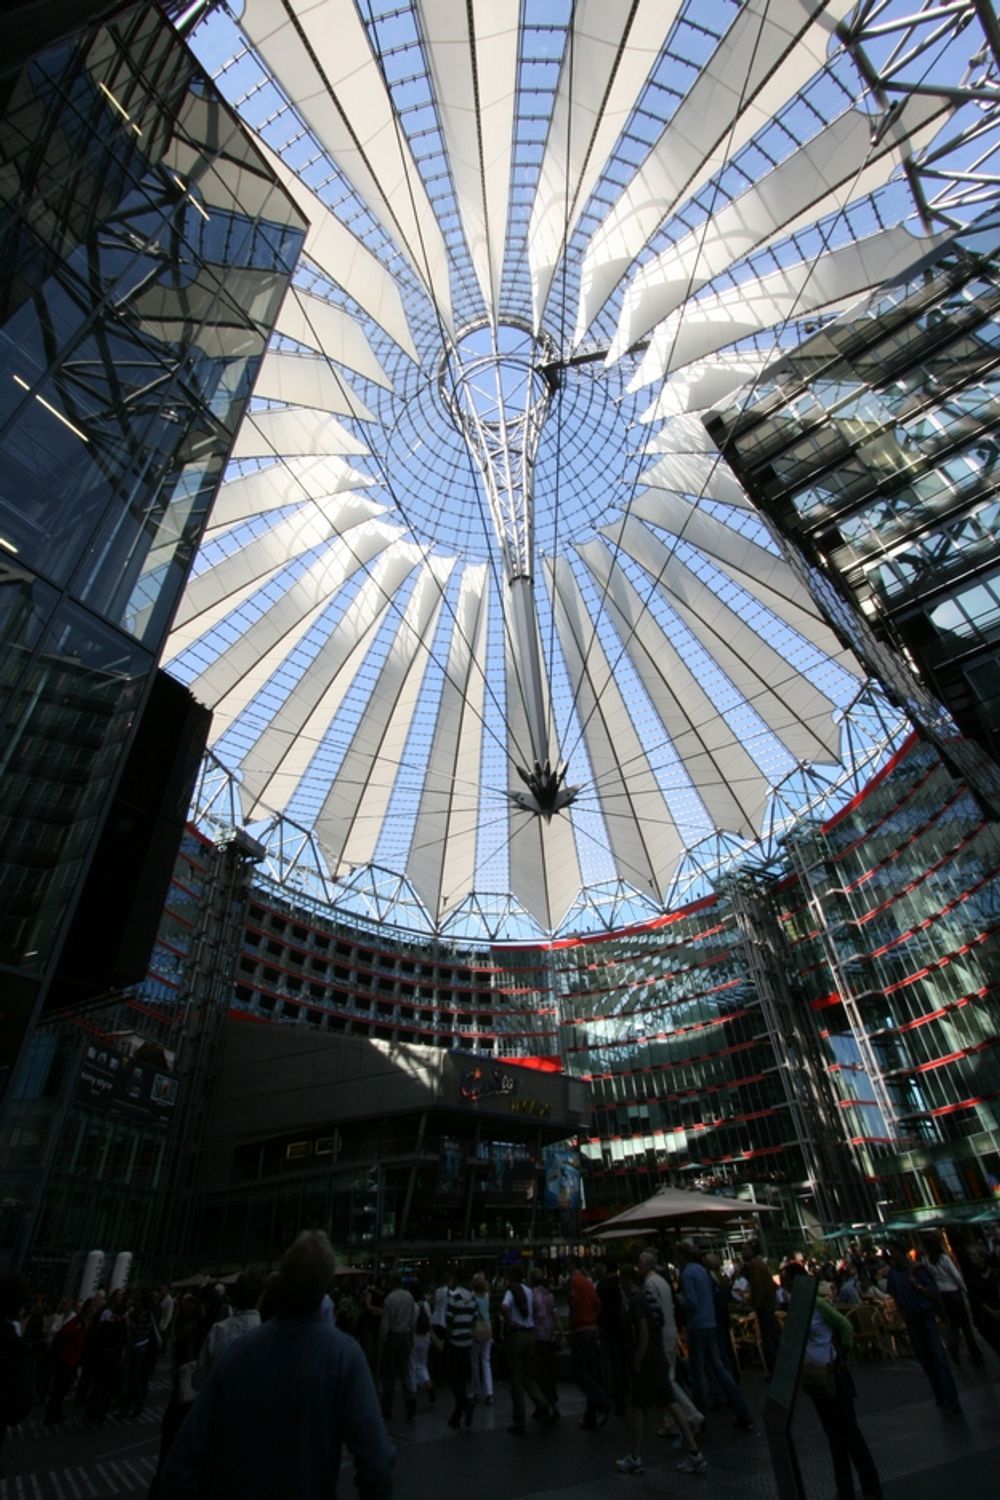 SONY CENTRE: Kuppelen over Sony Centre  på Potsdamer Platz består av glass og stål og danner tak over et trivelig torg med mange spisesteder. Arkitekt er Helmut Jahn og ingeniørfirmaet  Ove Arup og partners står bak den fantastiske stålkonstruksjonen.